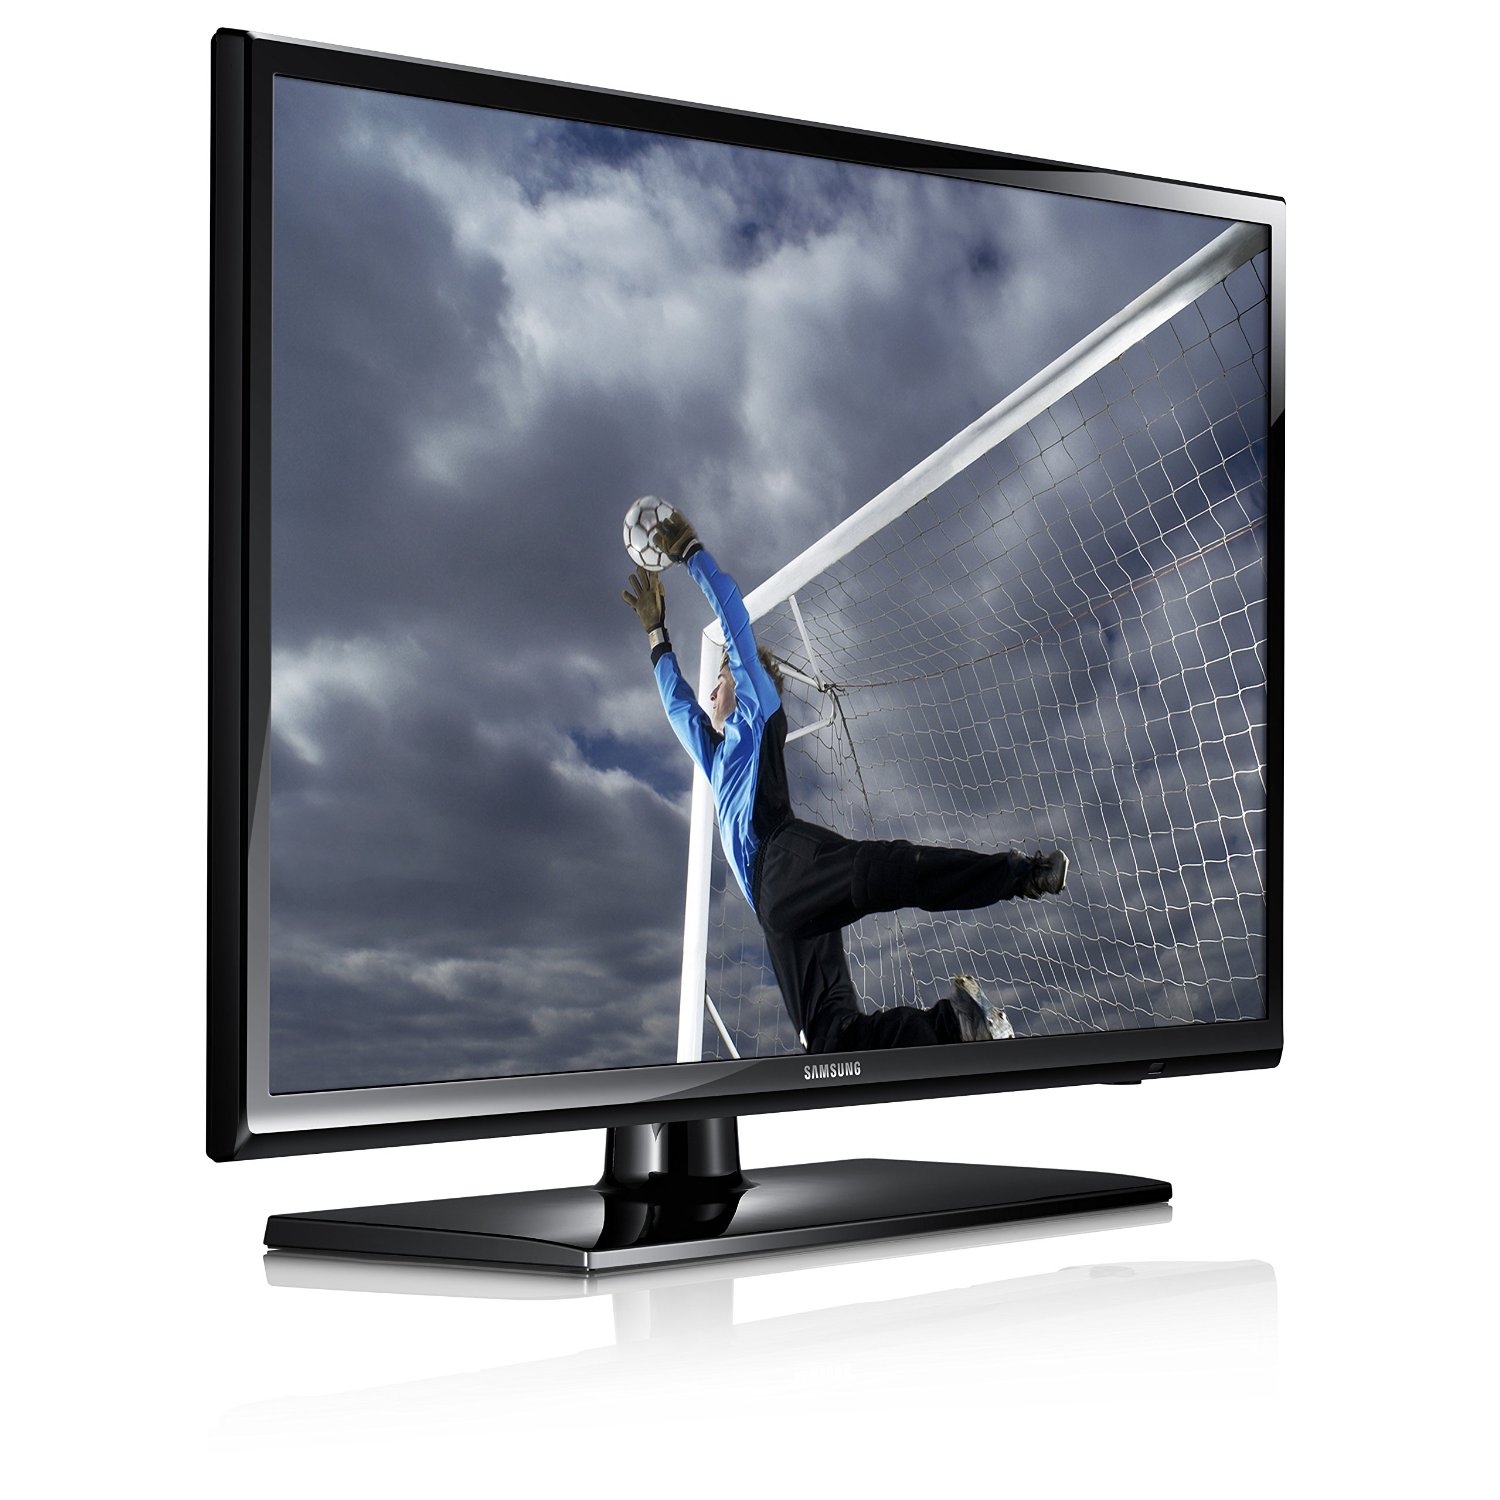 Samsung UN40H5003 FHD LED TV